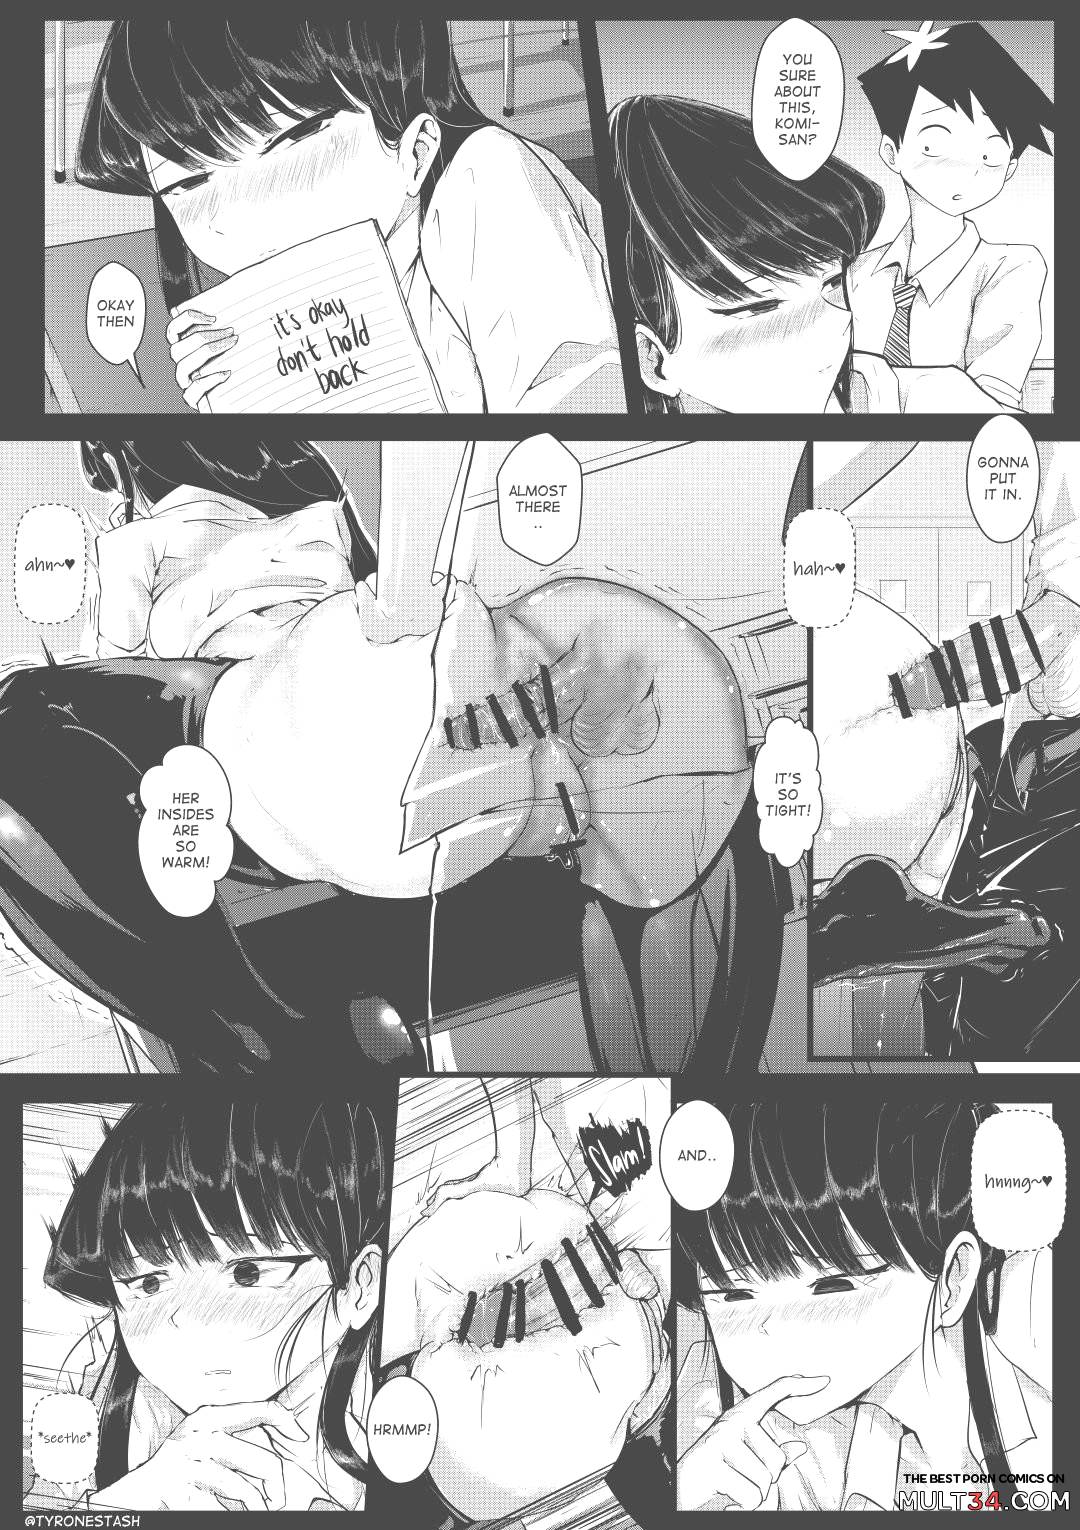 Komi-san Comics page 16